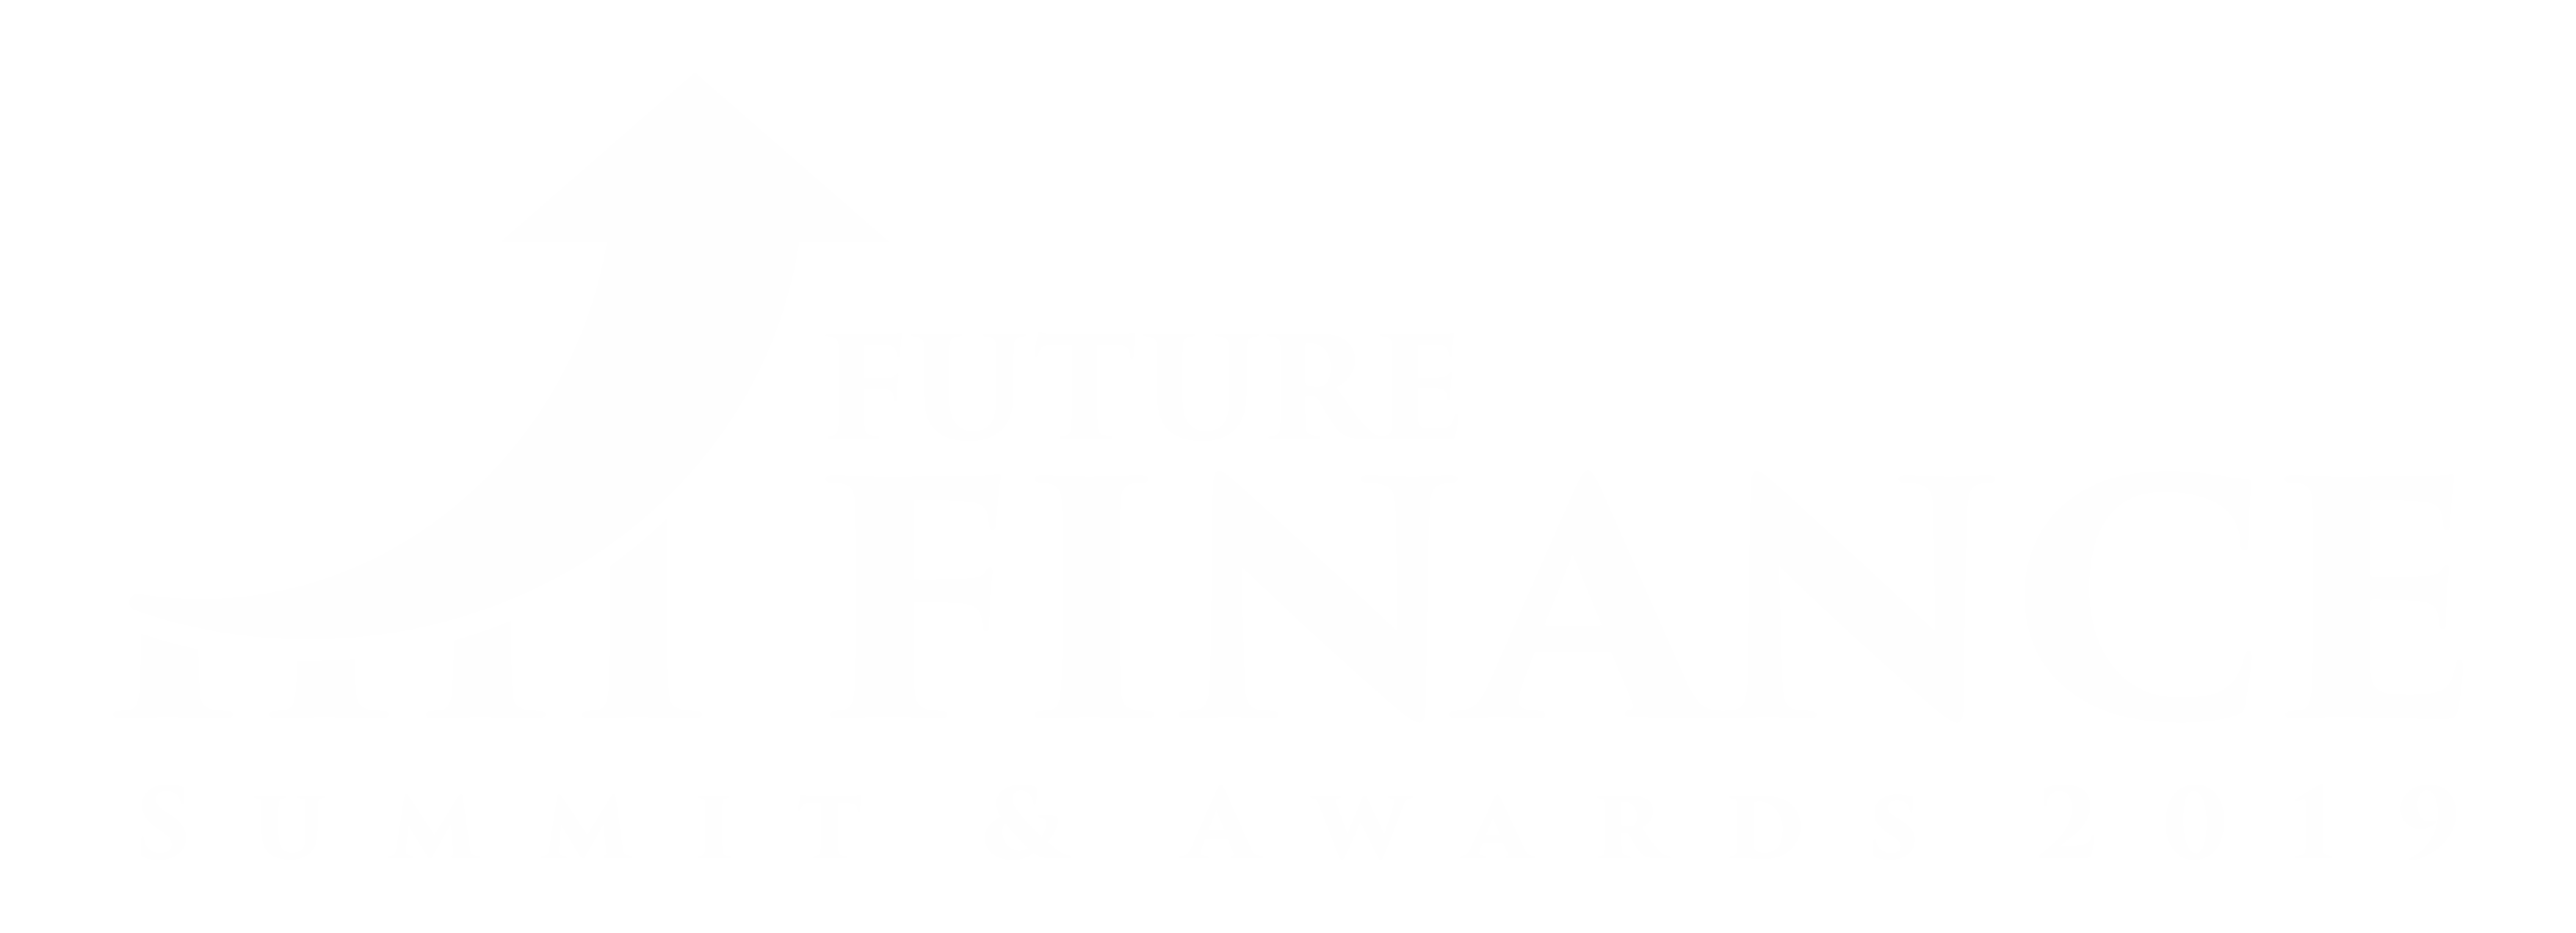 Future Finance Summit & Awards 2019